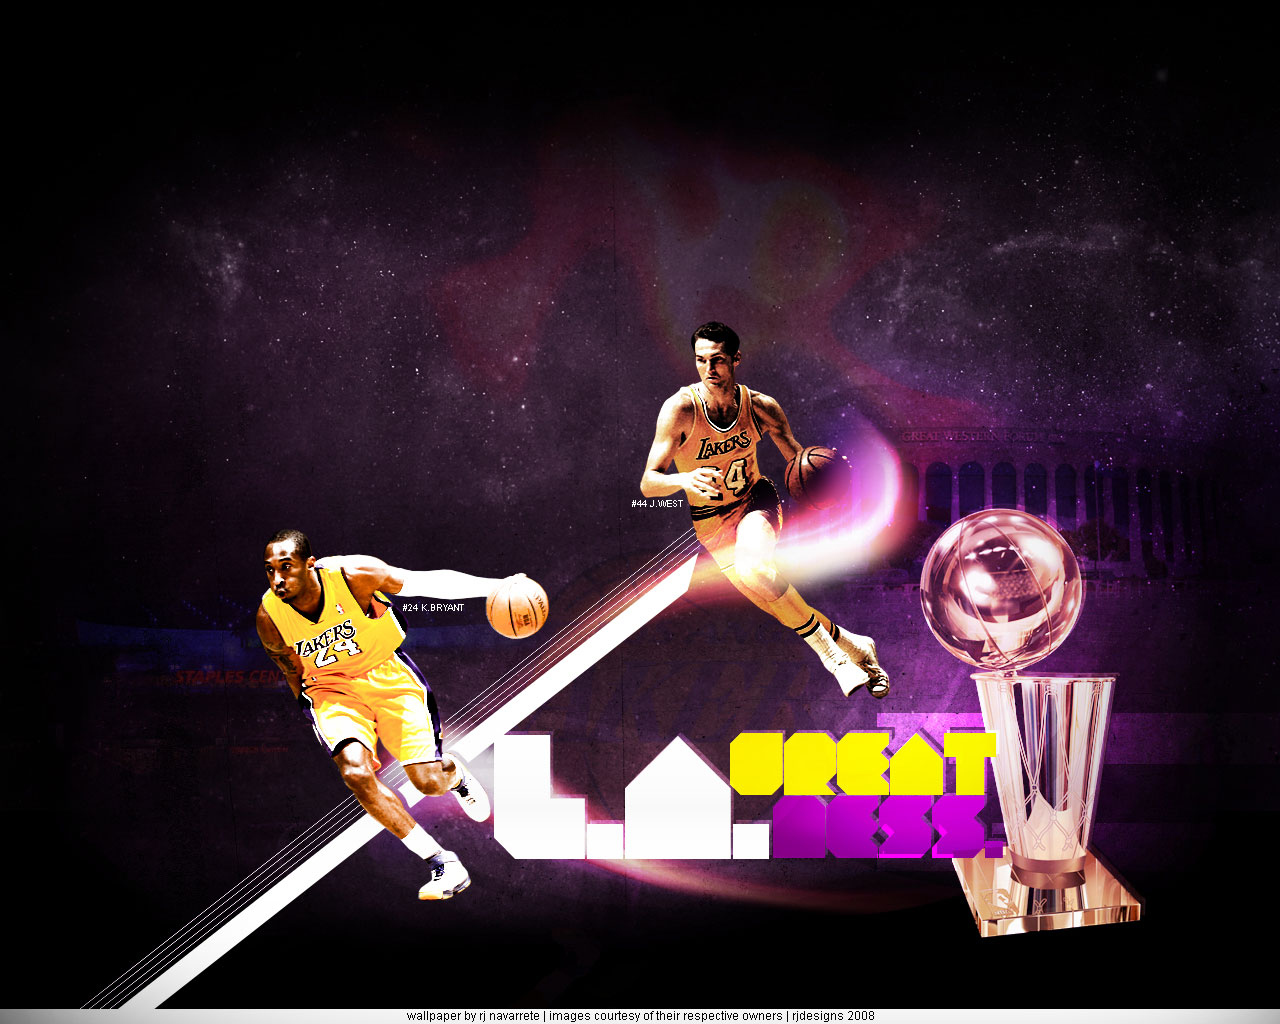 https://blogger.googleusercontent.com/img/b/R29vZ2xl/AVvXsEgCtggmRS4jDyTn7wKatKmYKzWR6hV6Lg_MVCJaPSXZkJIyNqvAWoCiFHYOKGk7tnRIepidtwuMaAXlEKnOdRAWAtXfAkPFjniUx1gNrmQKMc32Lfz5PYEdtwL9VzFBIIeMQ7xRC7XXxuTx/s1600/Lakers-Kobe-Bryant-Jerry-West-Wallpaper.jpg